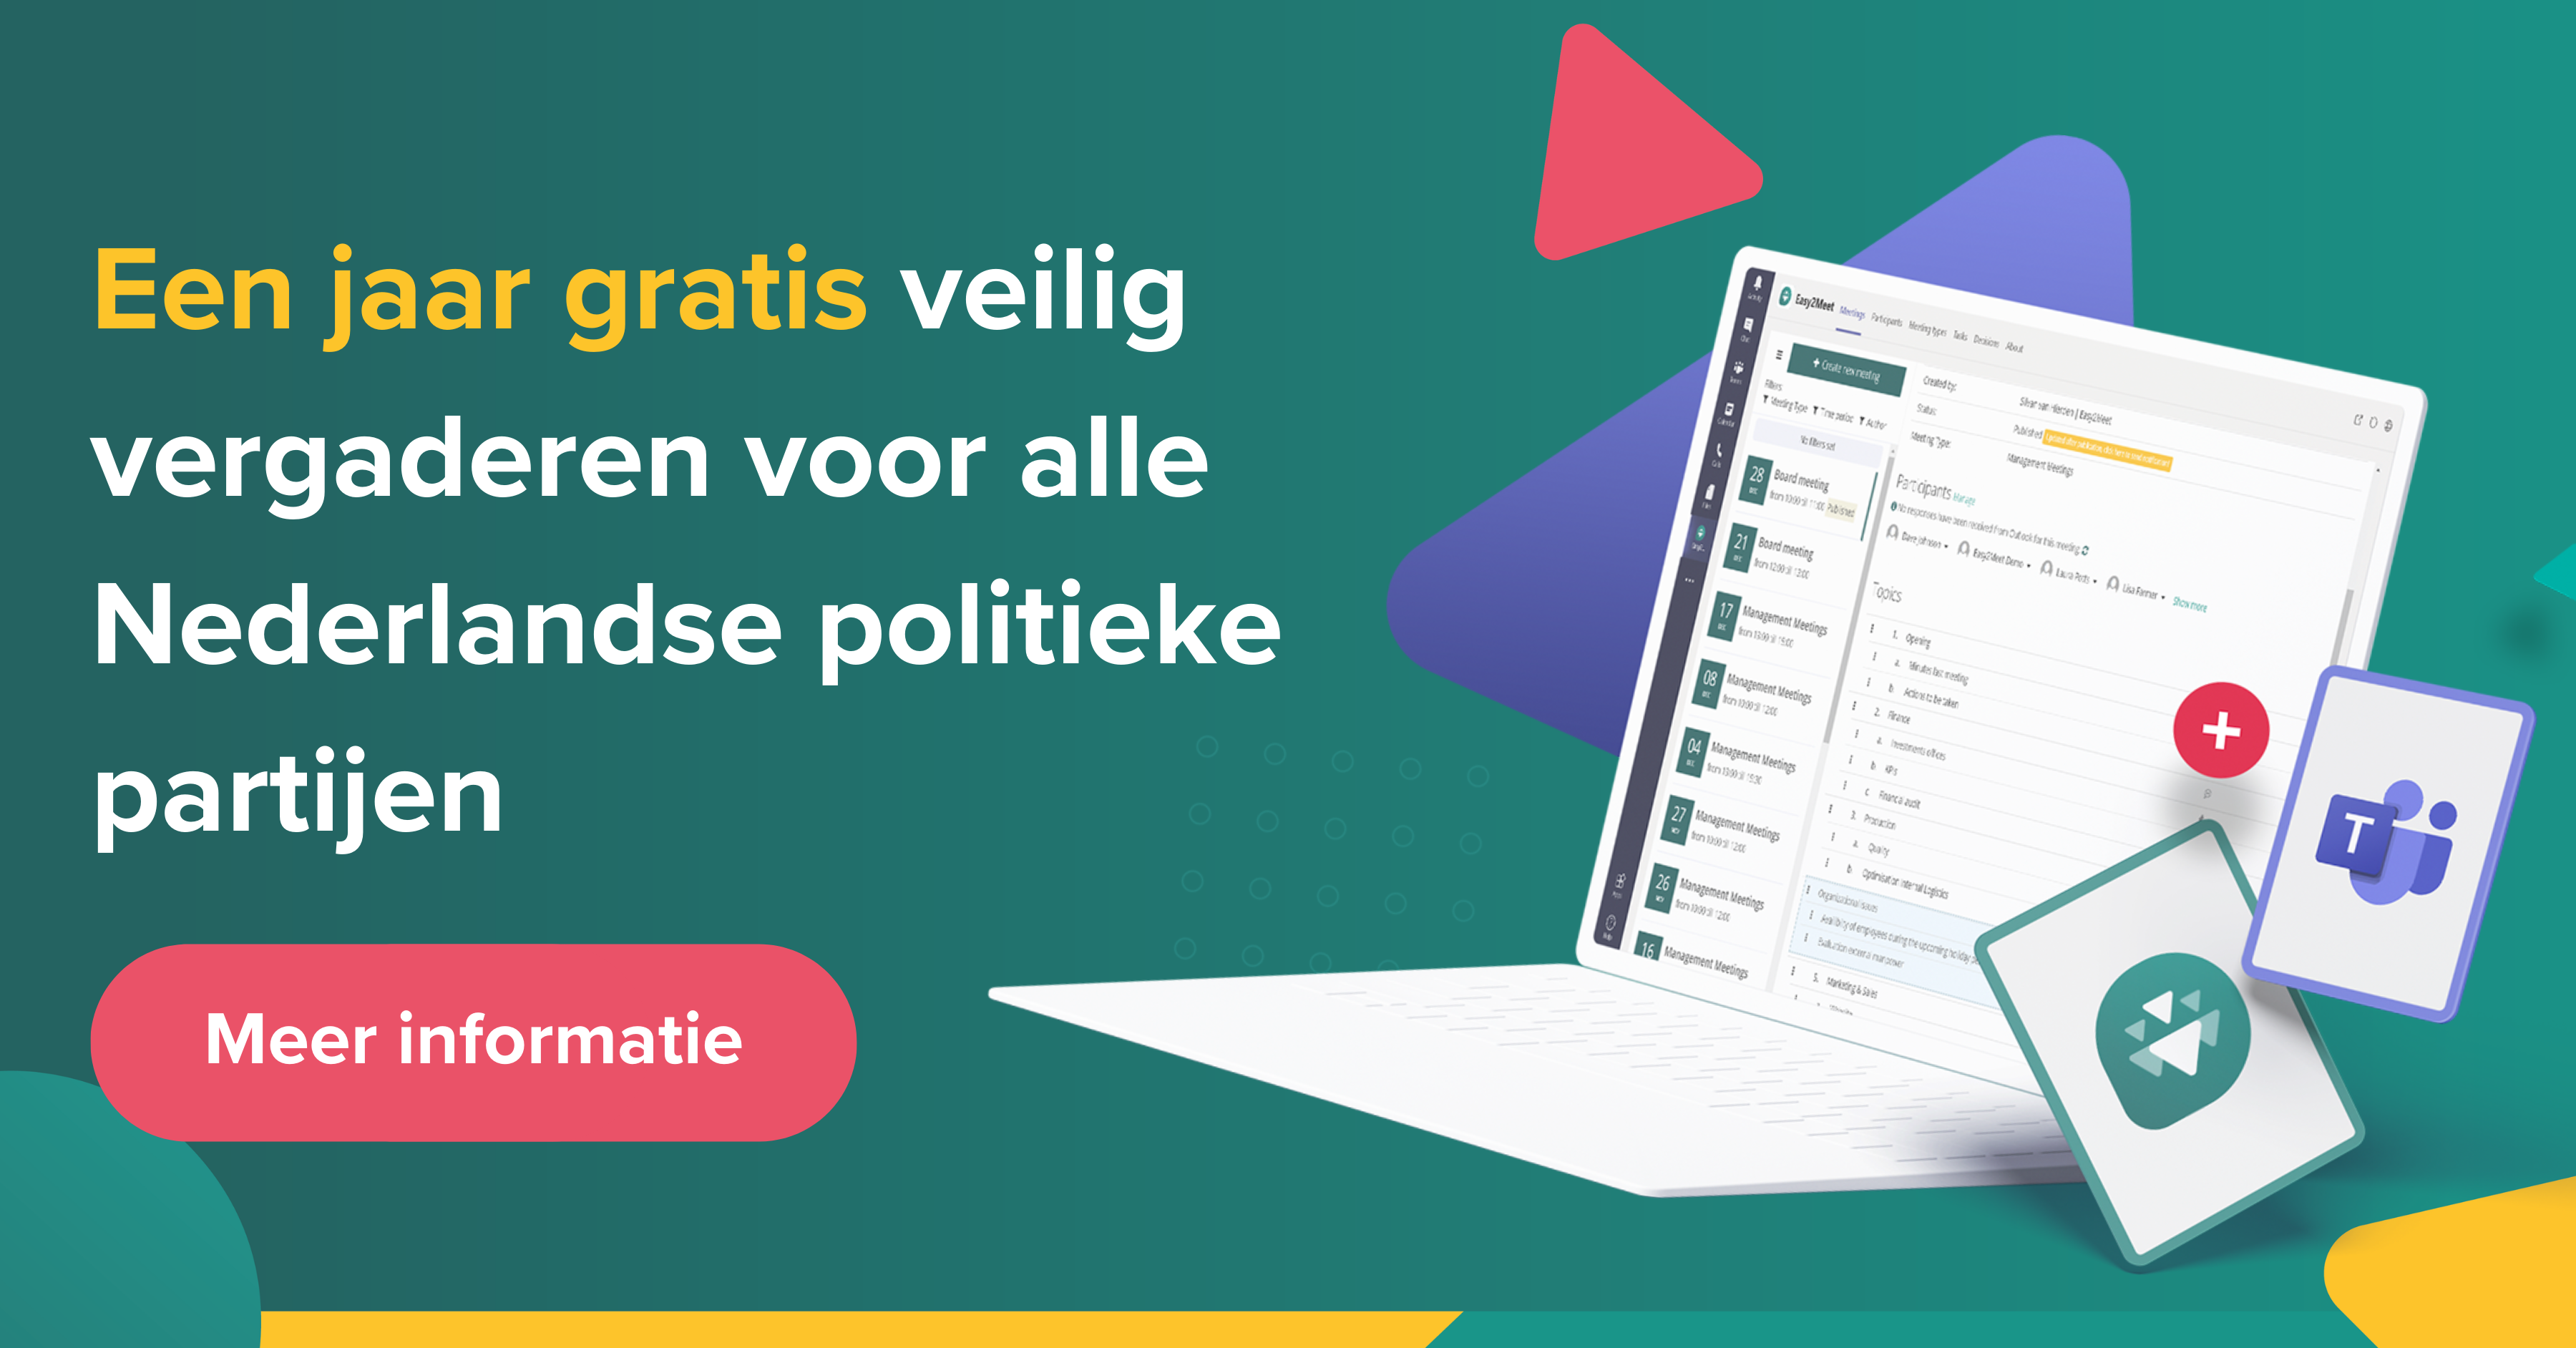 Een jaar gratis veilig vergaderen voor alle Nederlandse politieke partijen